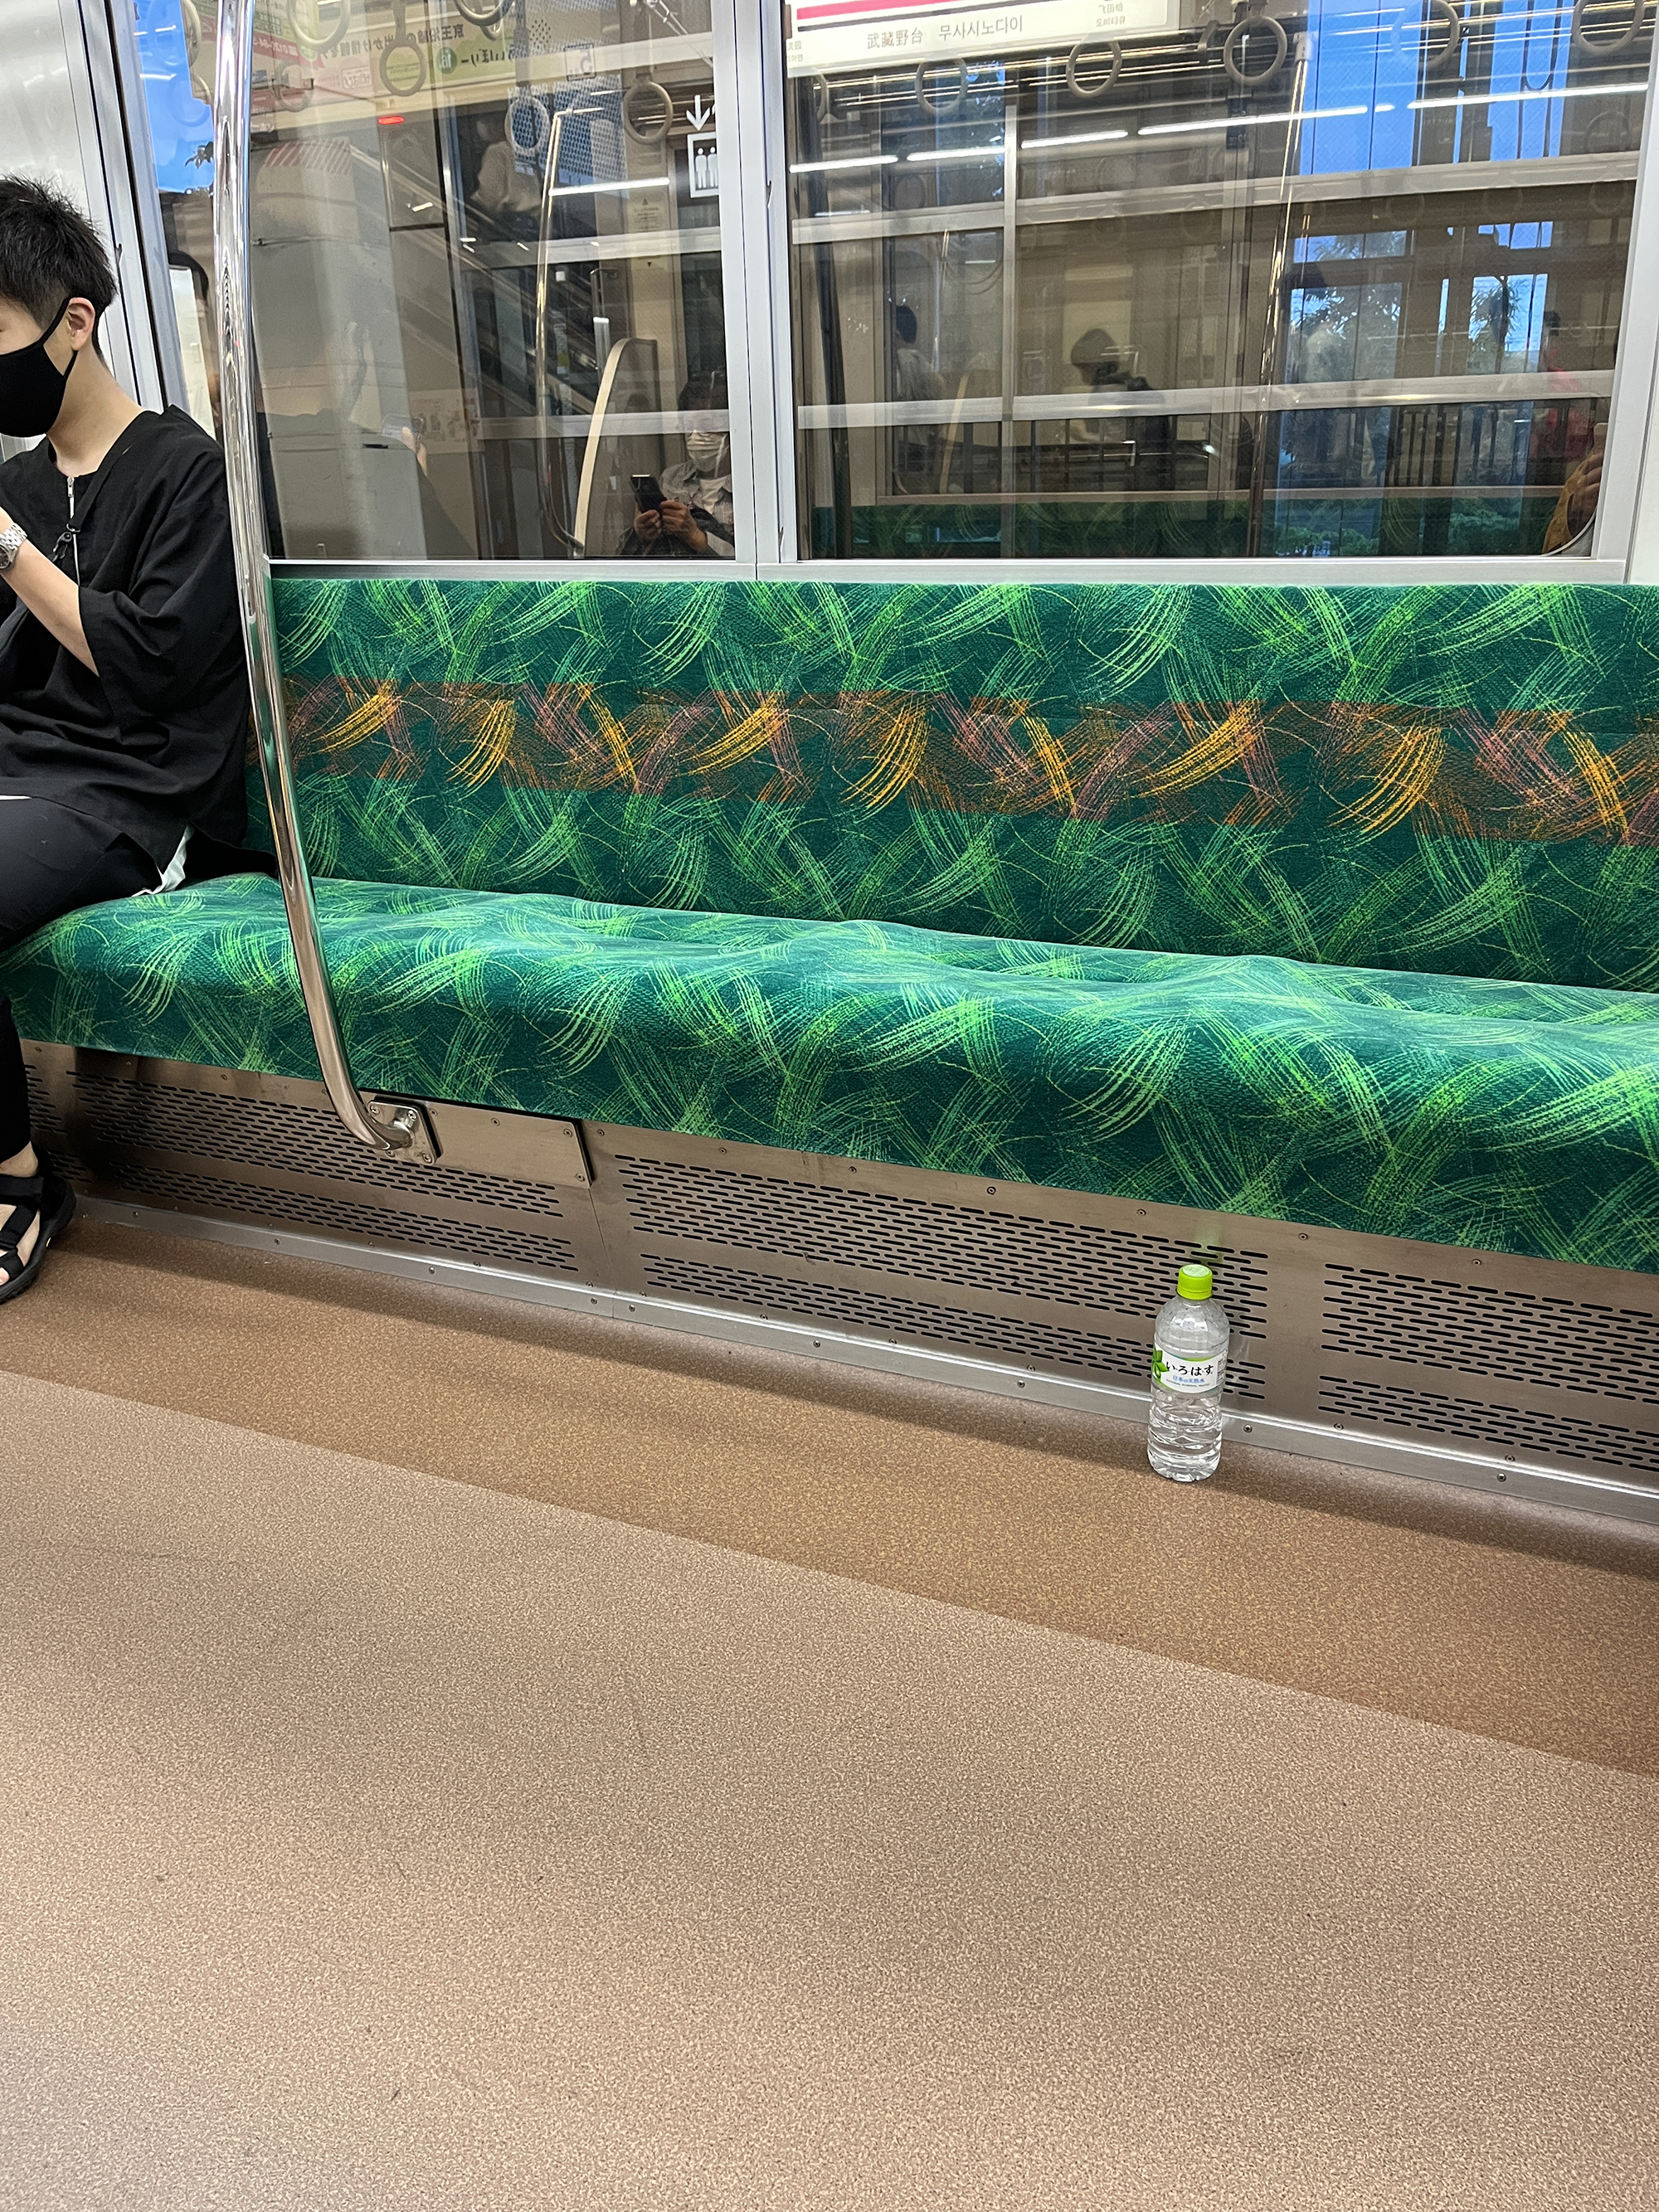 일본 전철에 버려진 페트병